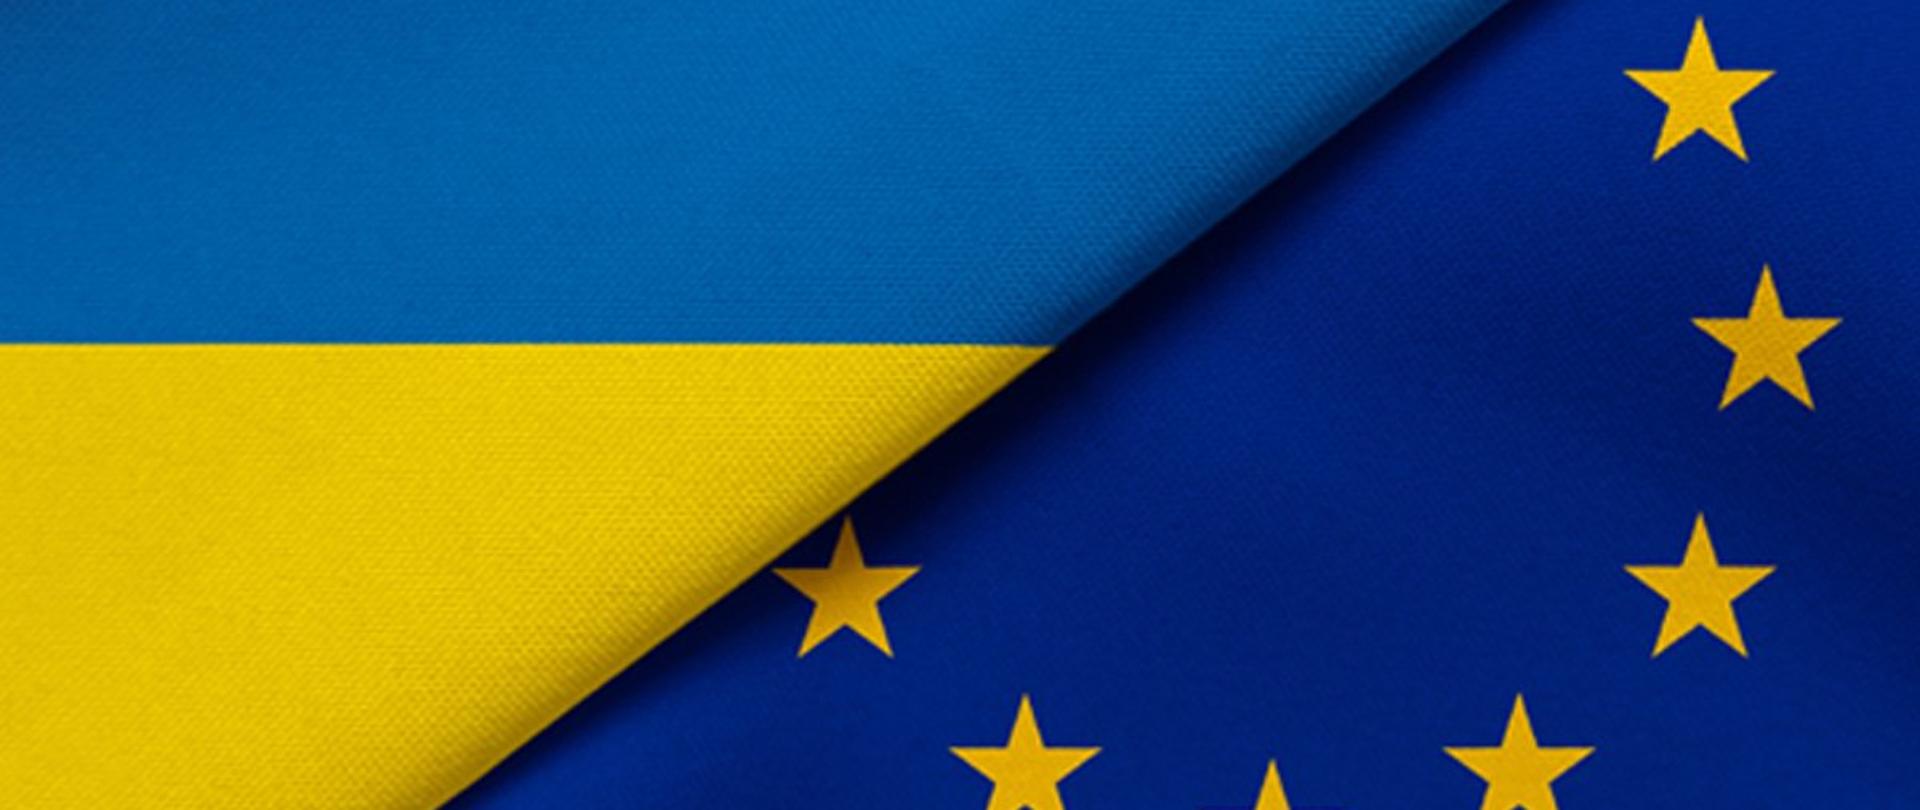 Ukraińska flaga położna obok flagi Unii Europejskiej